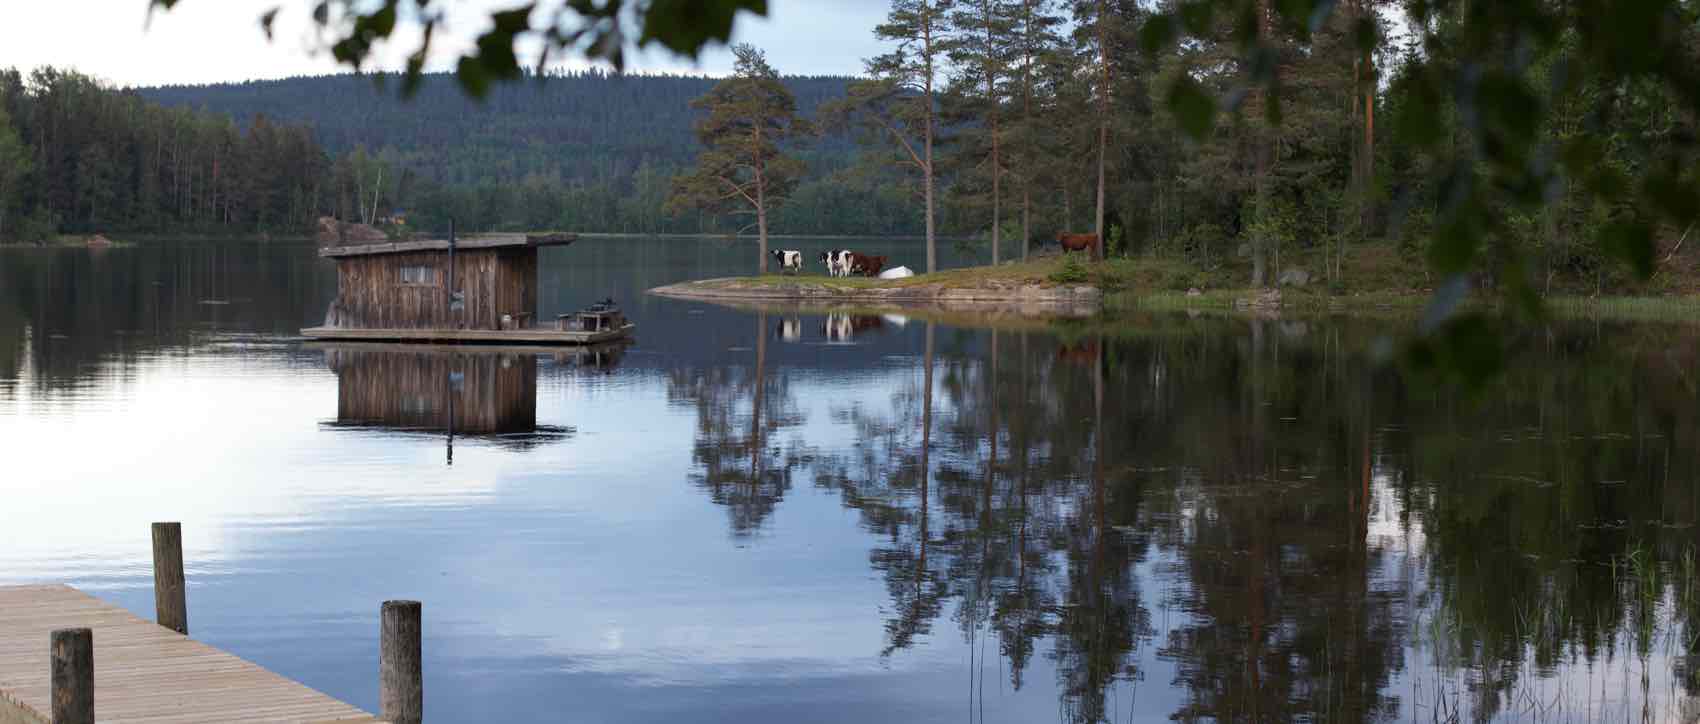 Svensk idyll:Ved innsjøen  Eldan, ligger campen  Naturbyn